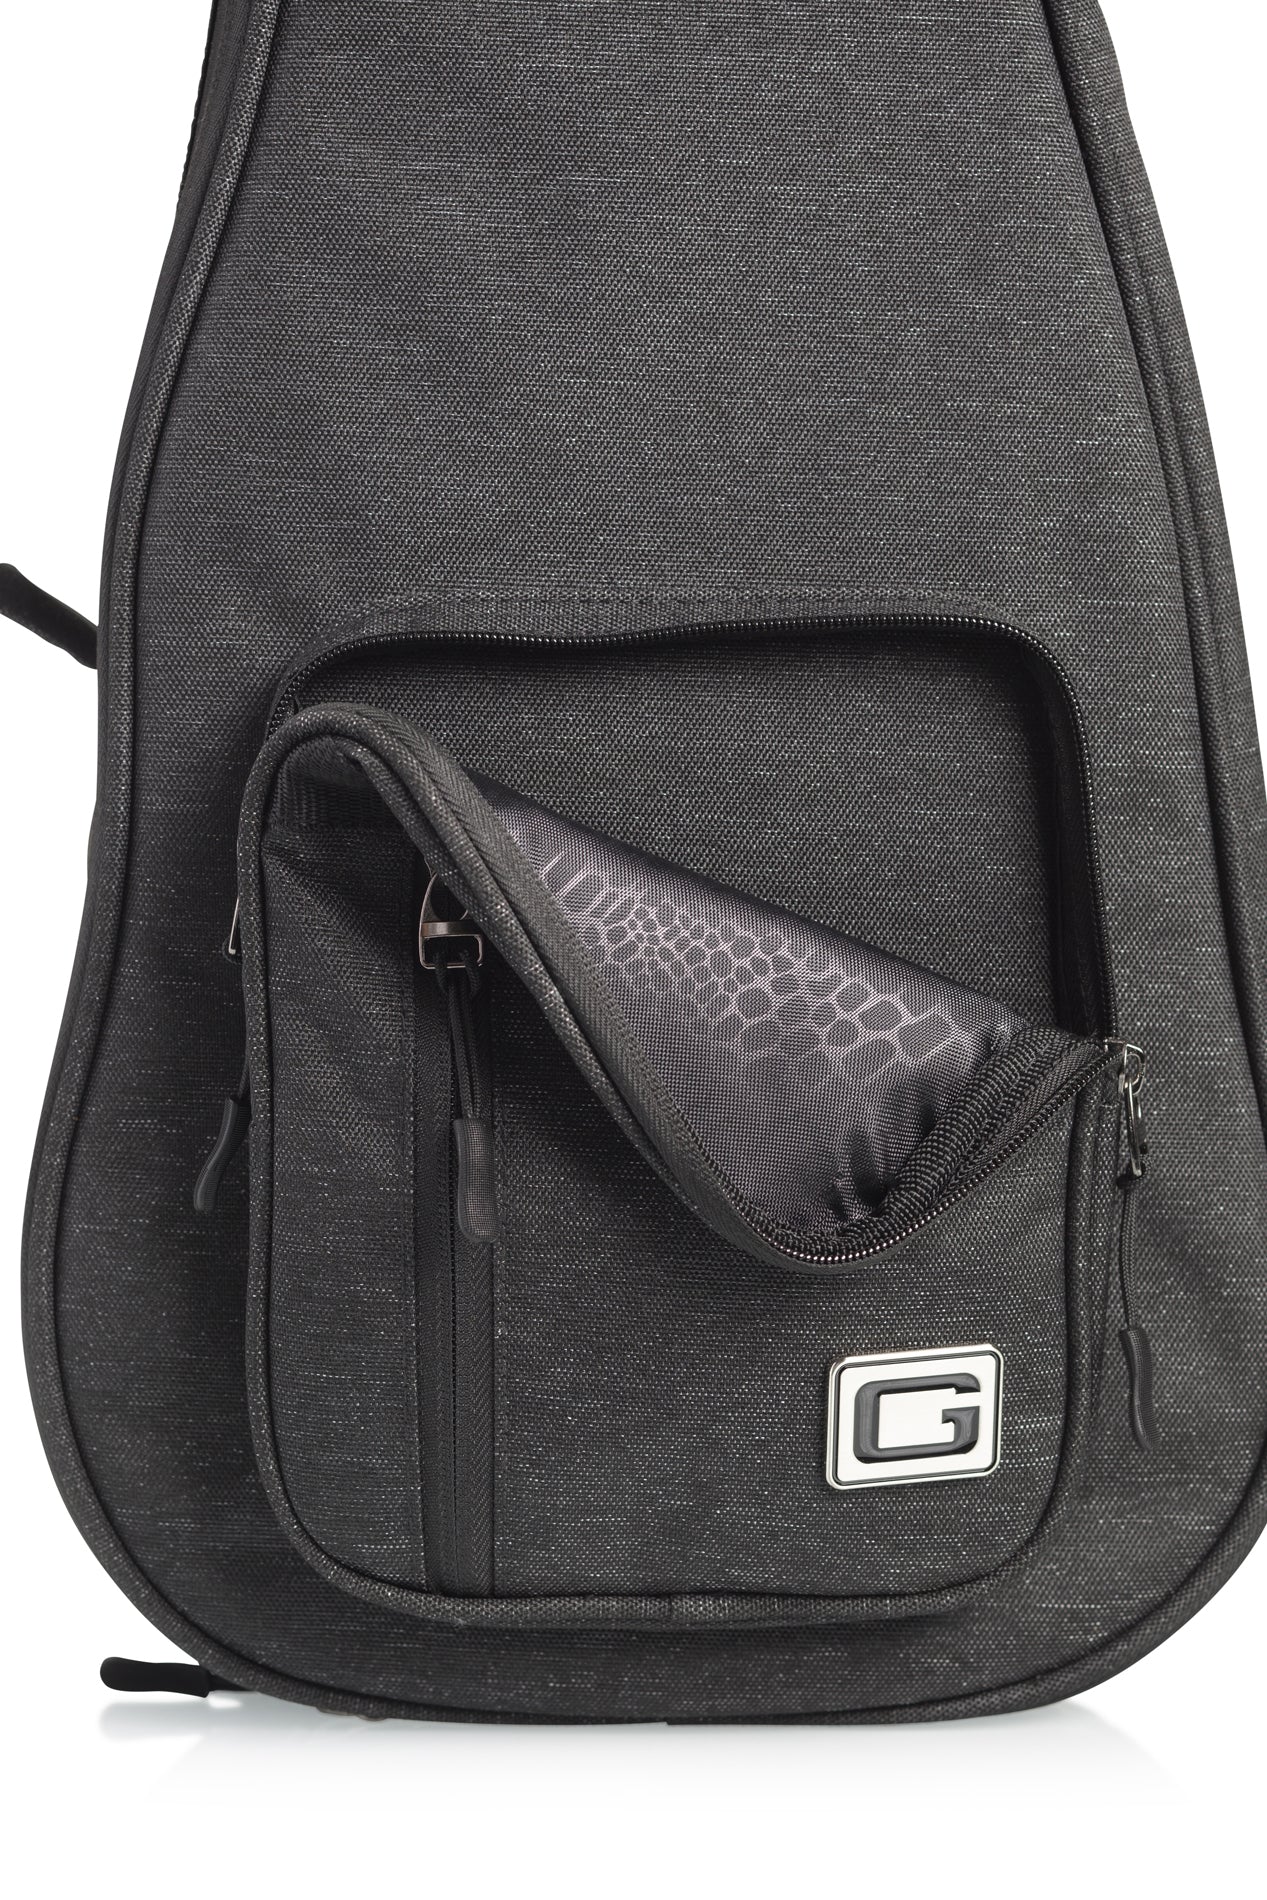 Gator Black Transit Bag – Tenor Ukulele - GT-UKE-TEN-BLK - Premium Ukulele Gigbag from Gator - Just $94.99! Shop now at Poppa's Music